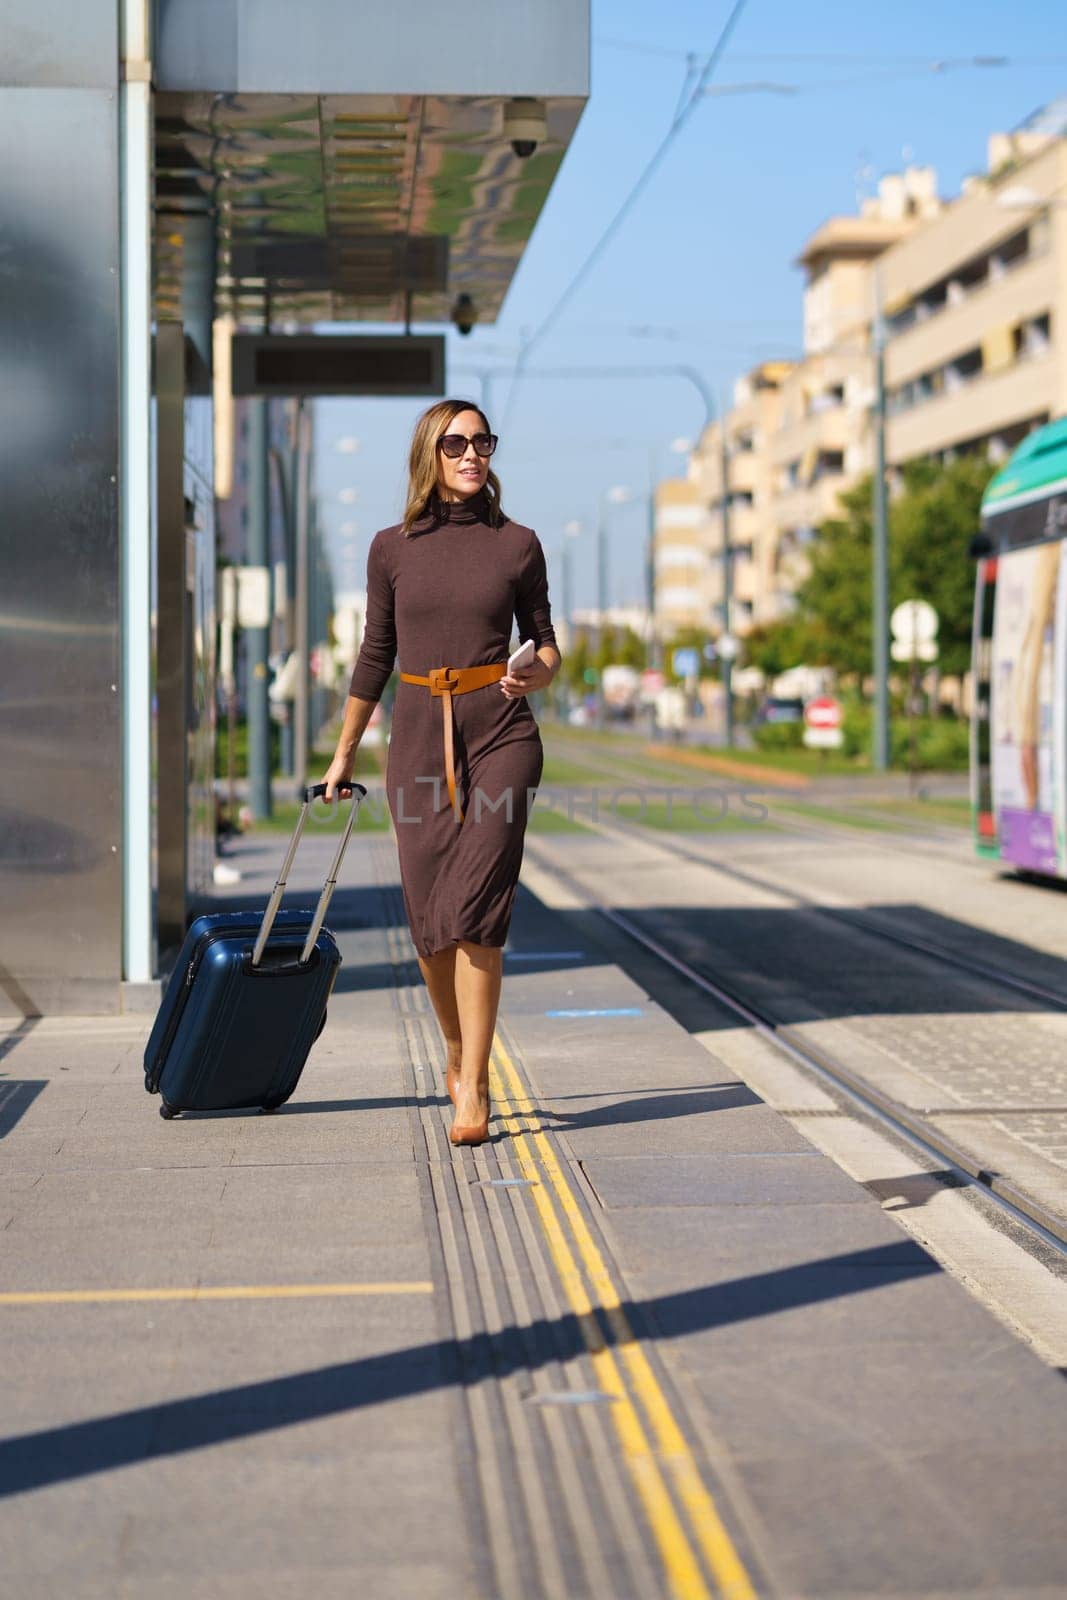 Businesswoman walking near tramway on street by javiindy